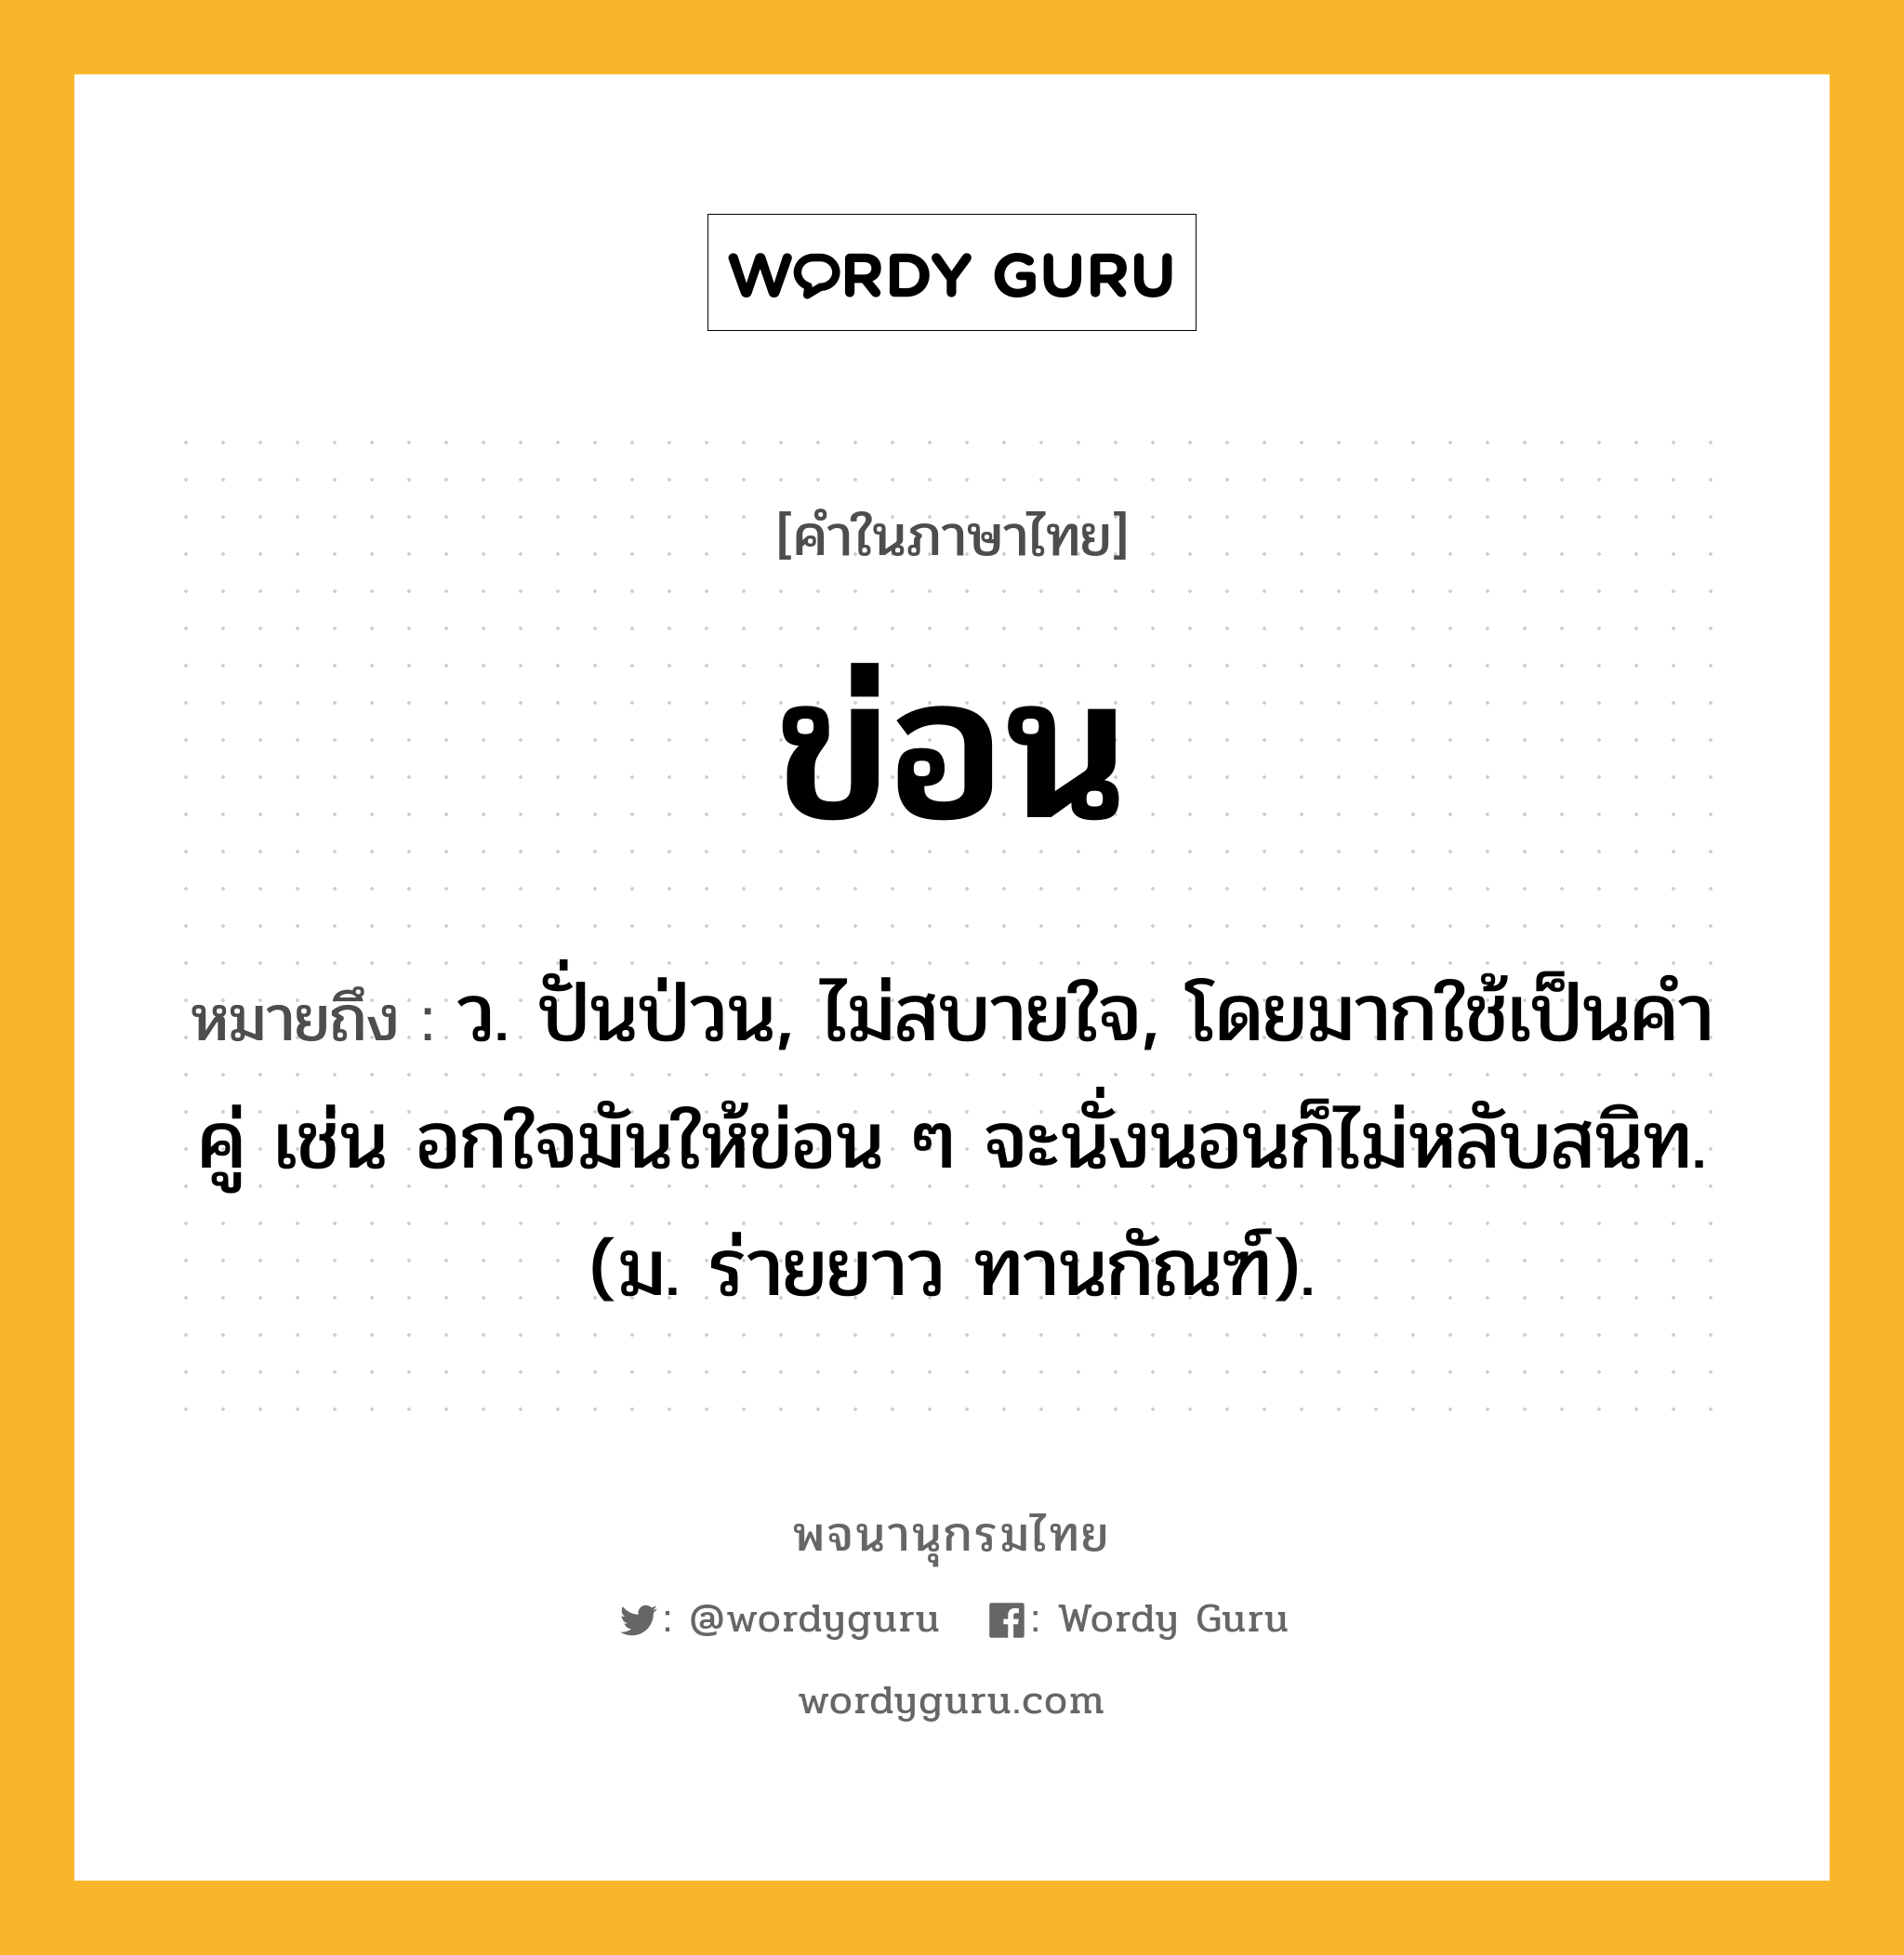 ข่อน ความหมาย หมายถึงอะไร?, คำในภาษาไทย ข่อน หมายถึง ว. ปั่นป่วน, ไม่สบายใจ, โดยมากใช้เป็นคําคู่ เช่น อกใจมันให้ข่อน ๆ จะนั่งนอนก็ไม่หลับสนิท. (ม. ร่ายยาว ทานกัณฑ์).